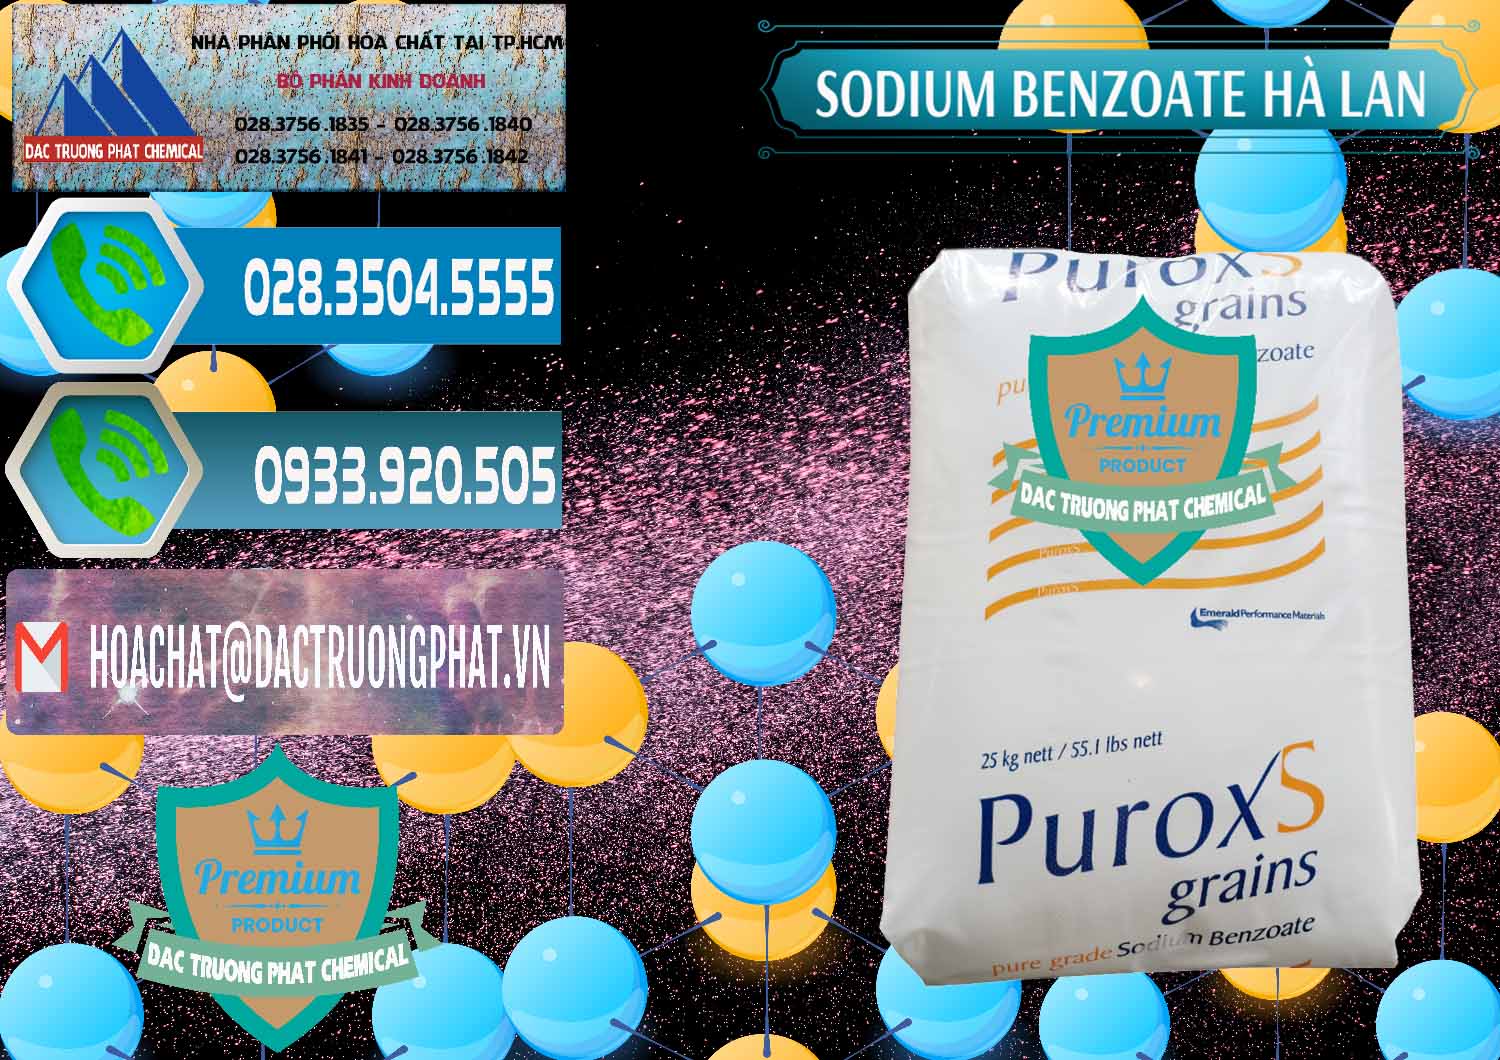 Cty chuyên cung cấp và bán Sodium Benzoate - Mốc Bột Puroxs Hà Lan Netherlands - 0467 - Nơi bán & cung cấp hóa chất tại TP.HCM - congtyhoachat.net